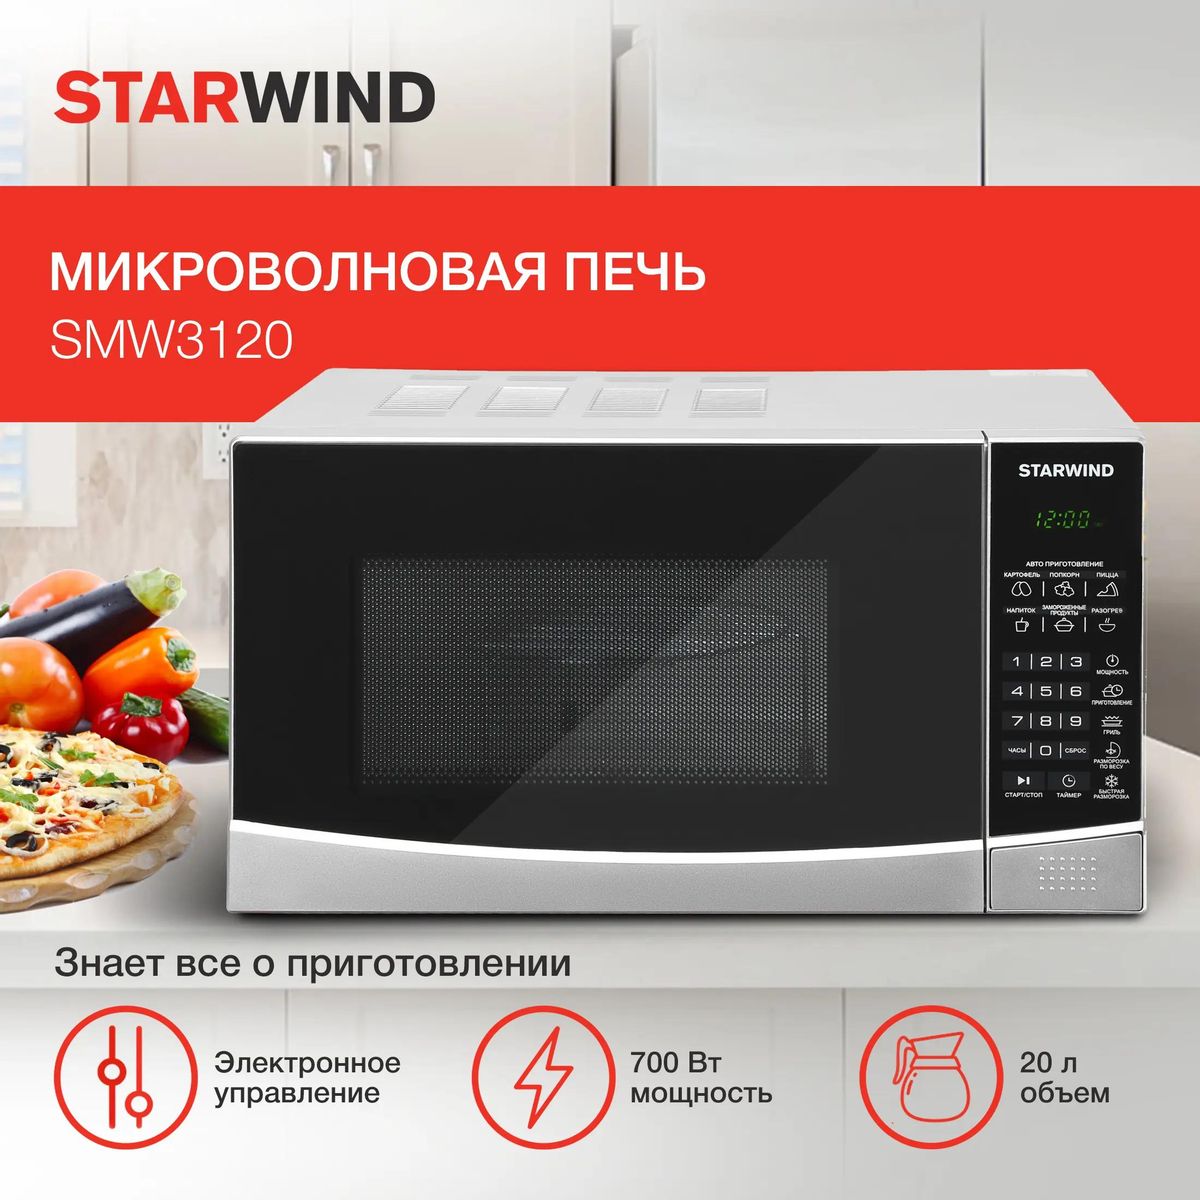 Микроволновая печь StarWind SMW3120, 700Вт, 20л, серебристый /черный